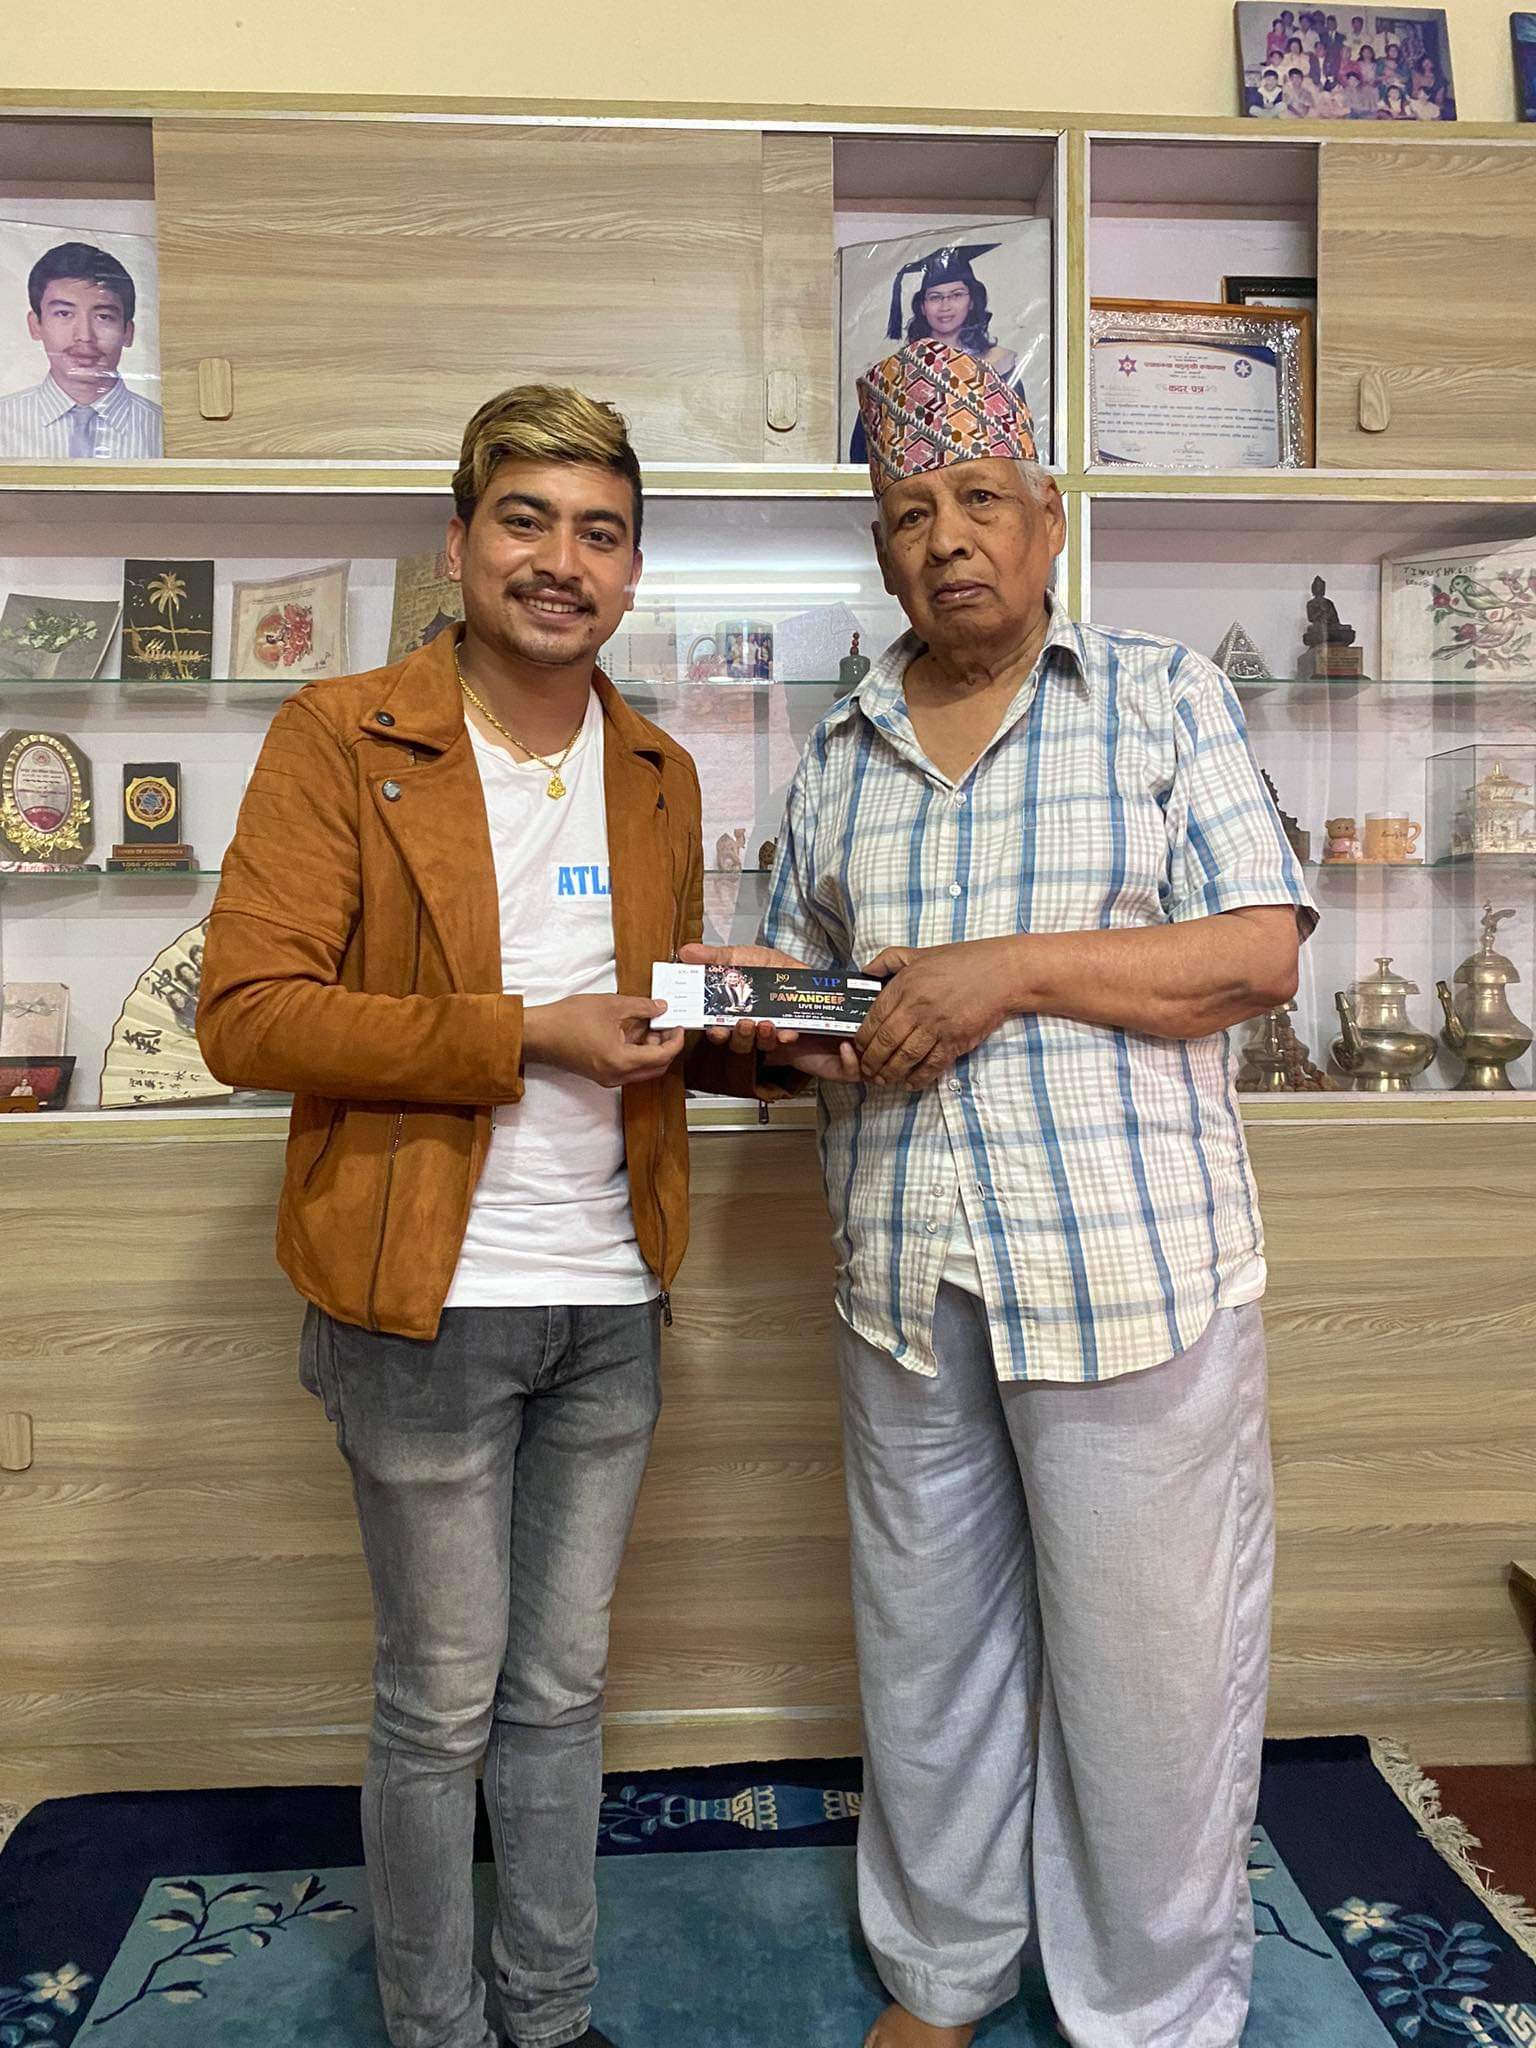 इन्डियन आइडल विजेता पवनदीपको नेपाल क्रेज, ९३ वर्षे वृद्धले लिए लाइभ सोको टिकट